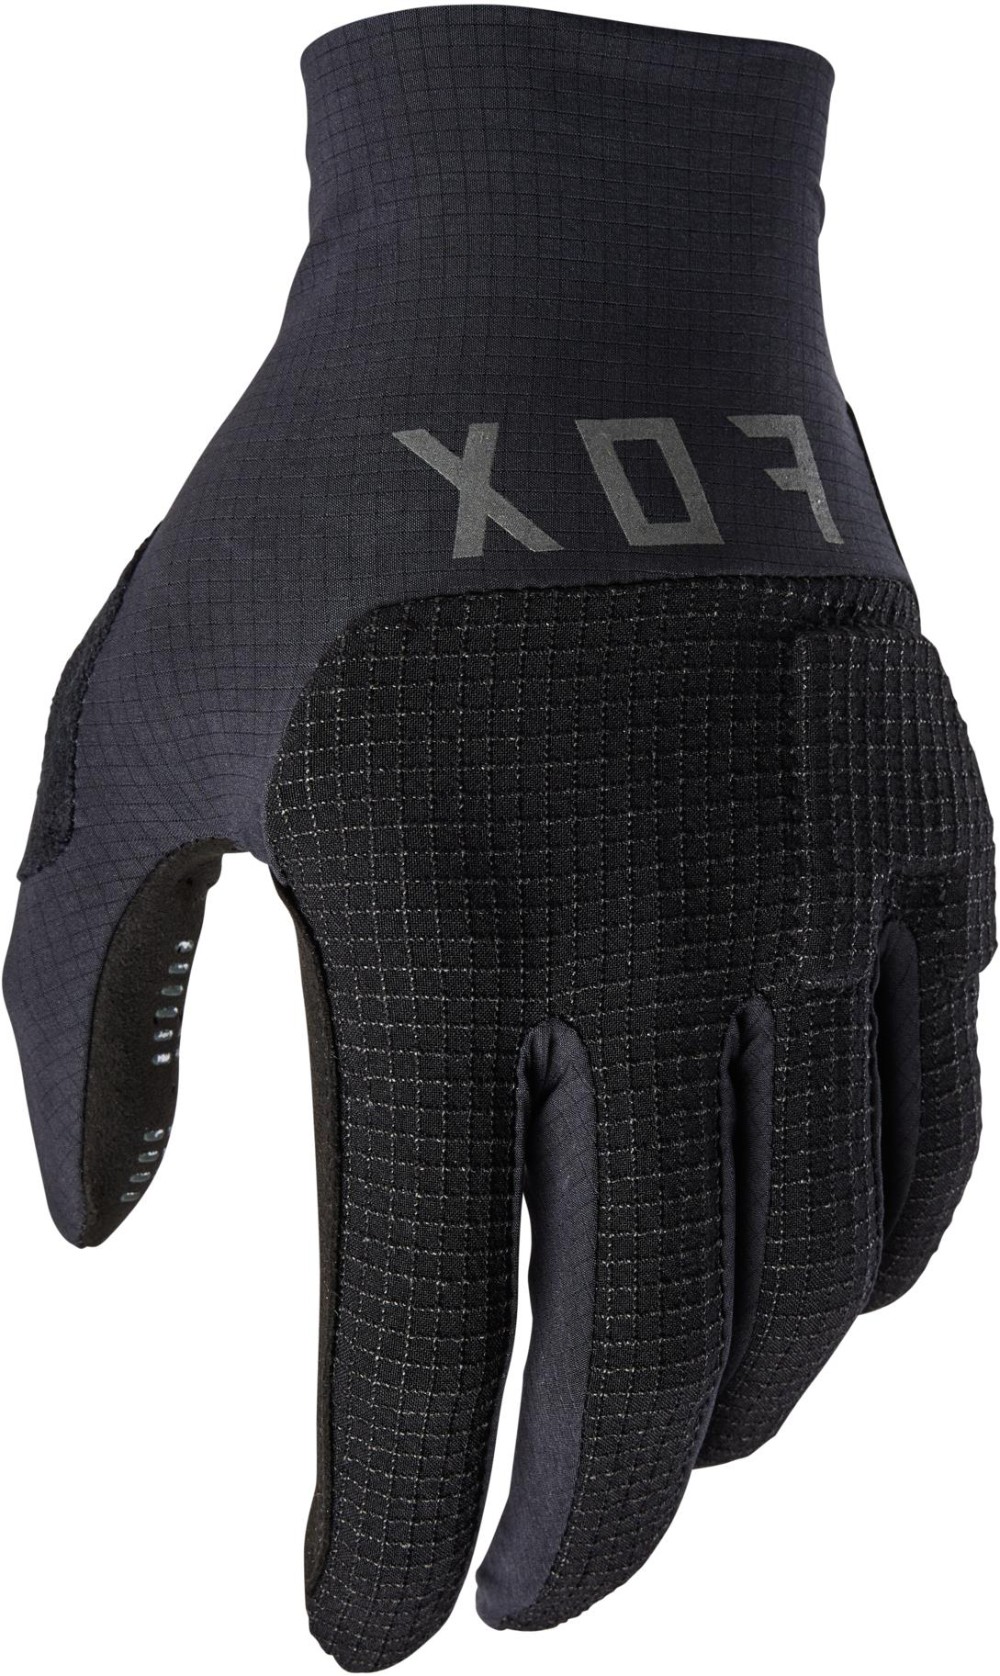 Flexair Pro Long Finger Gloves image 0